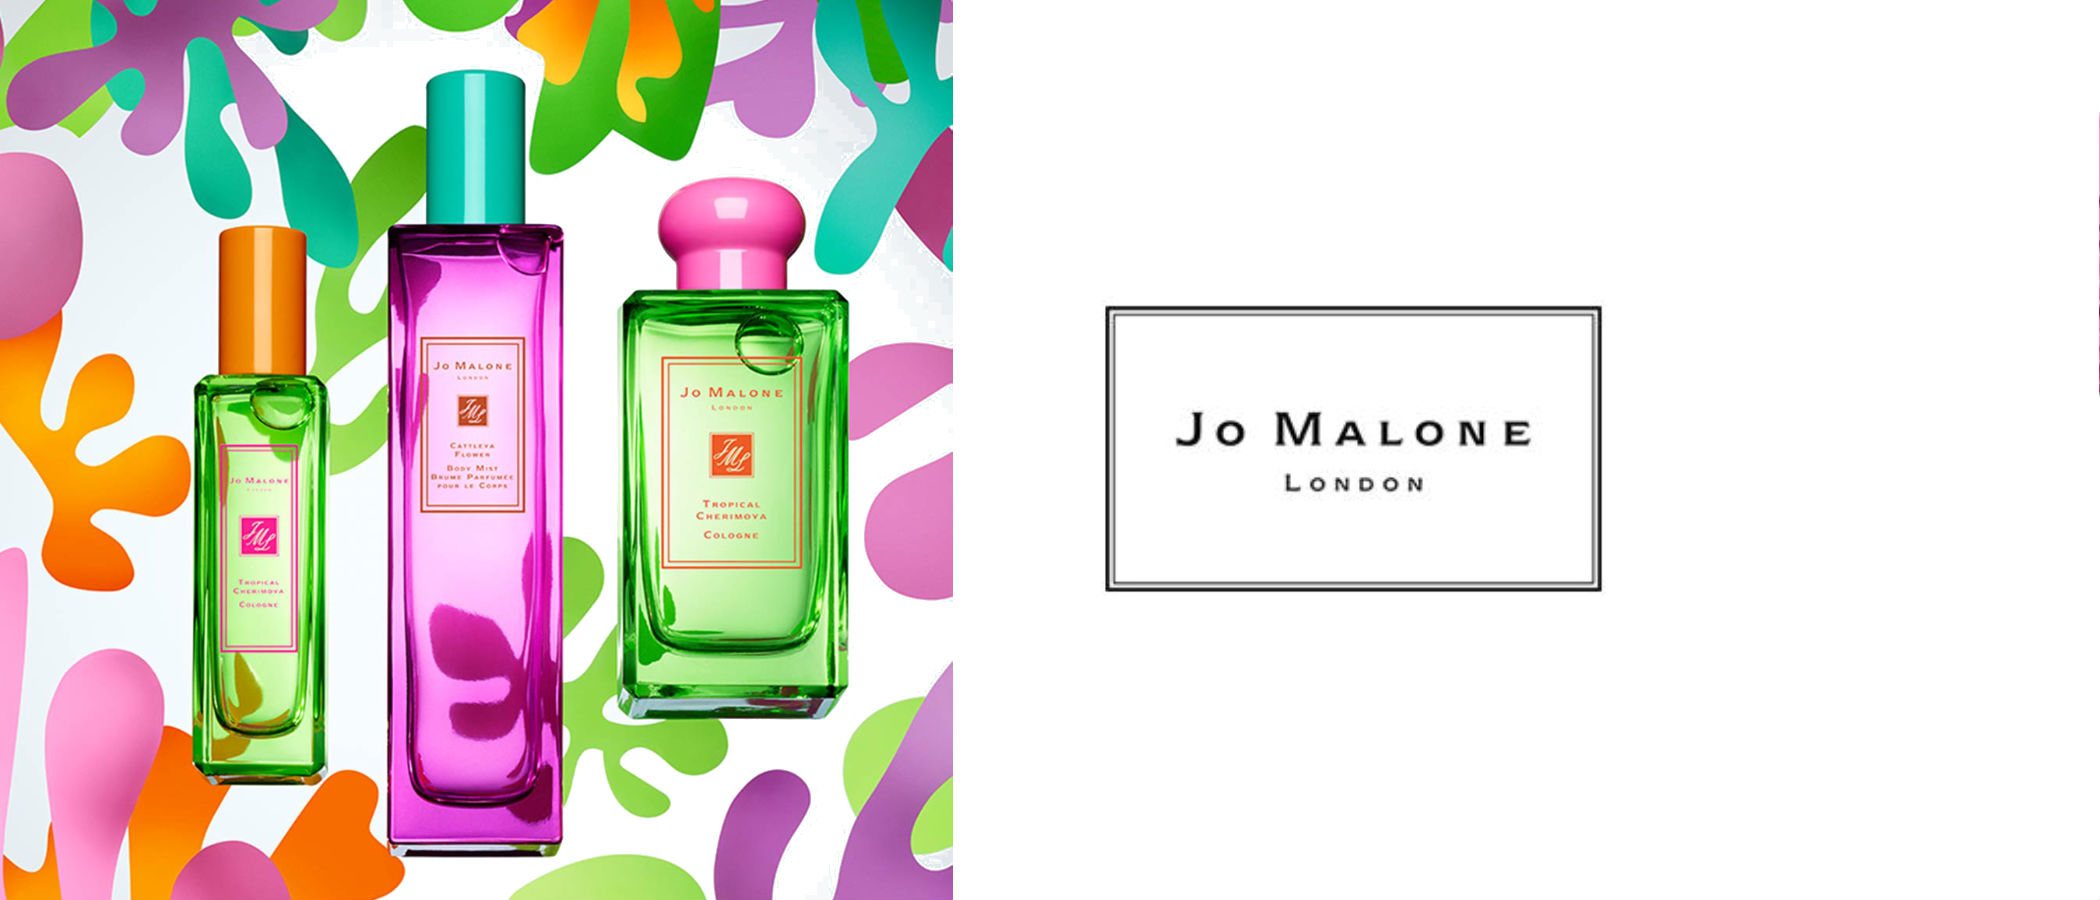 Jo Malone presenta su colección 'Hot Blossom' con un atractivo pack de aroma floral y frutal